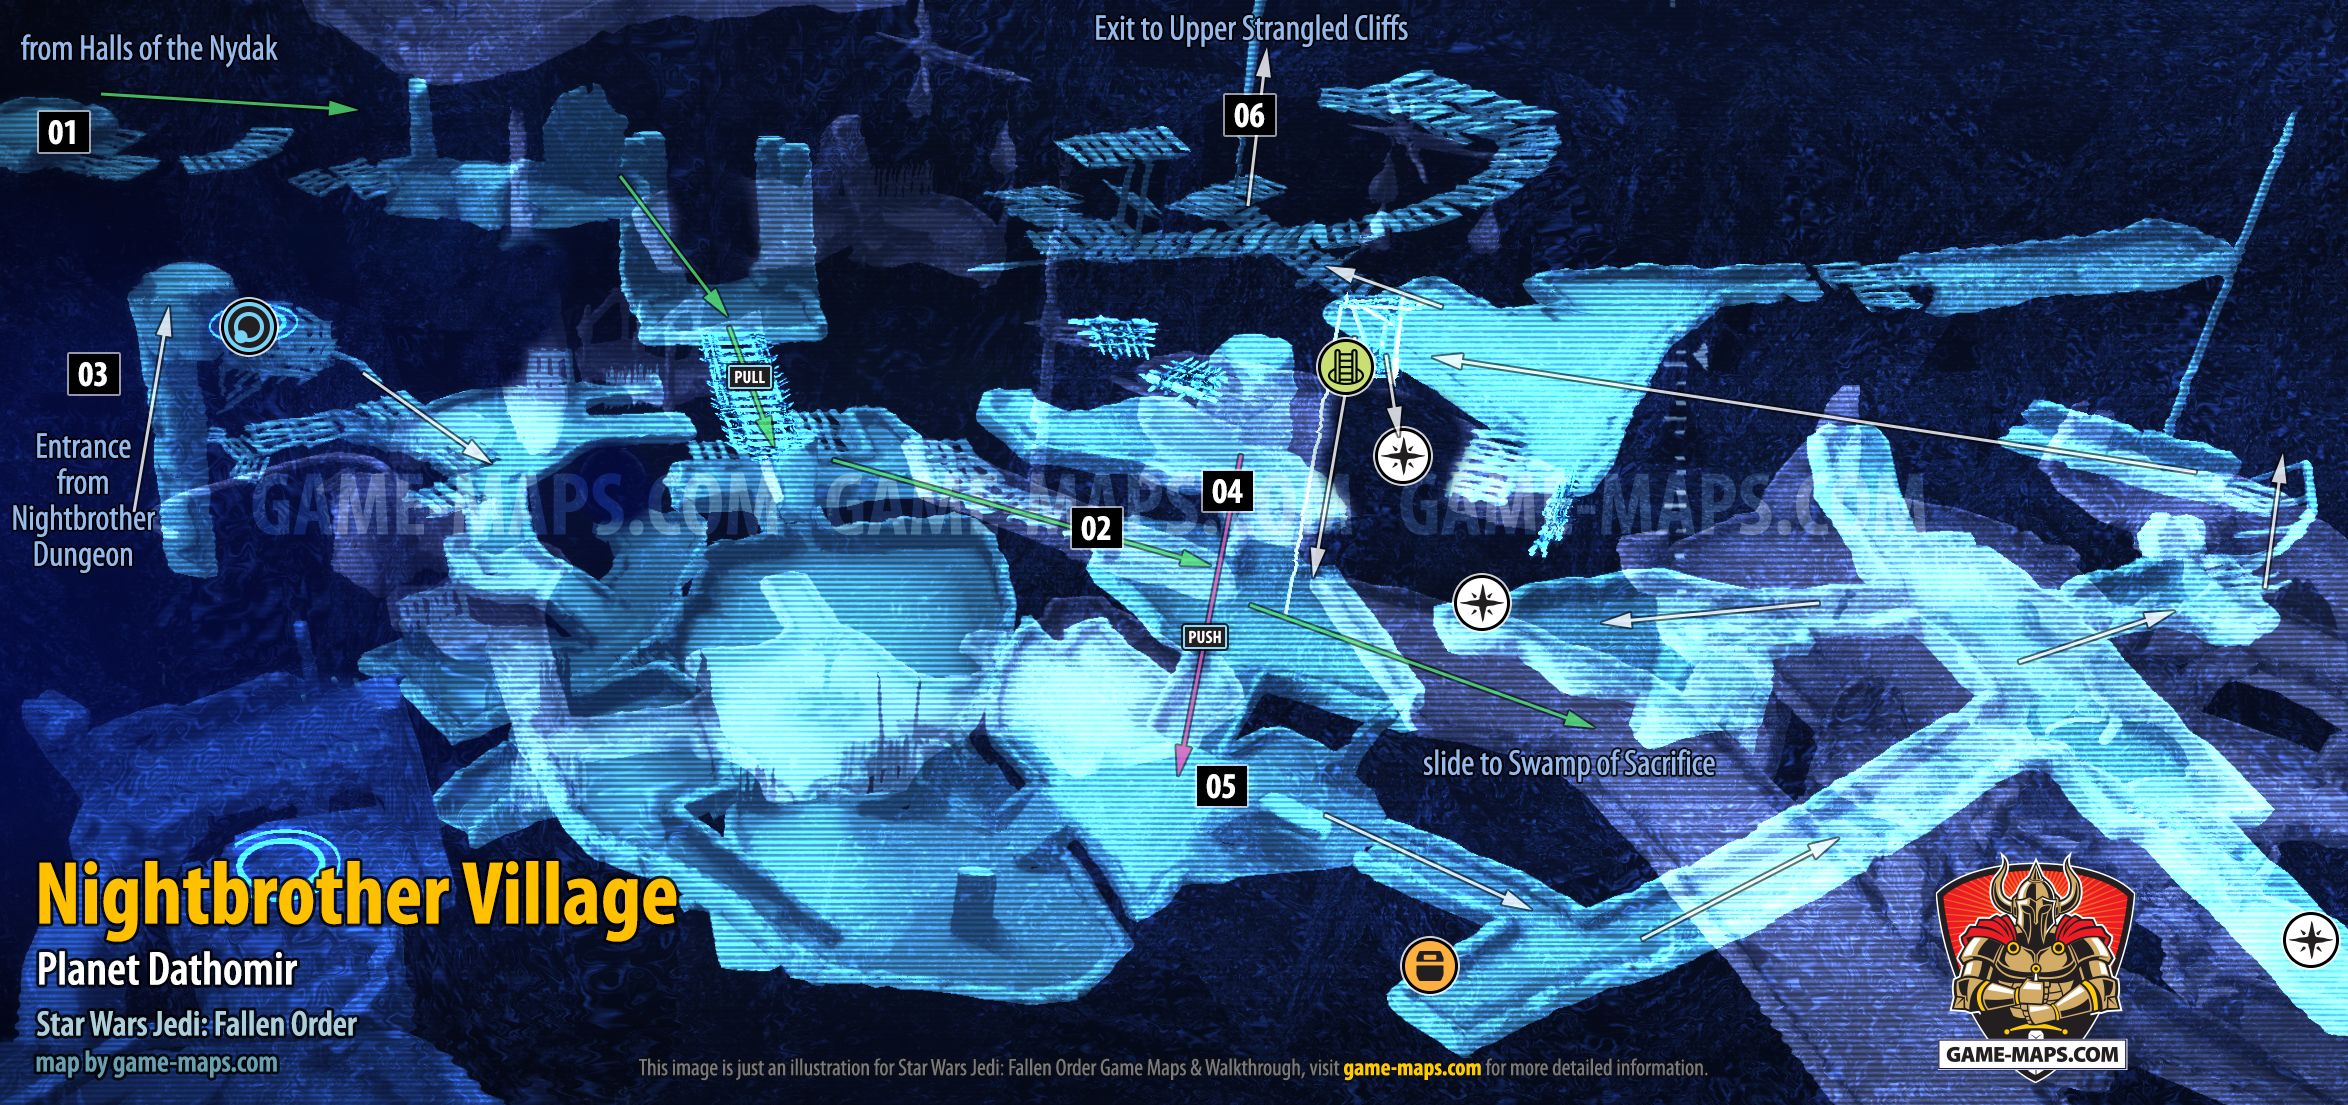 Nightbrother Village Map Star Wars Jedi: Fallen Order